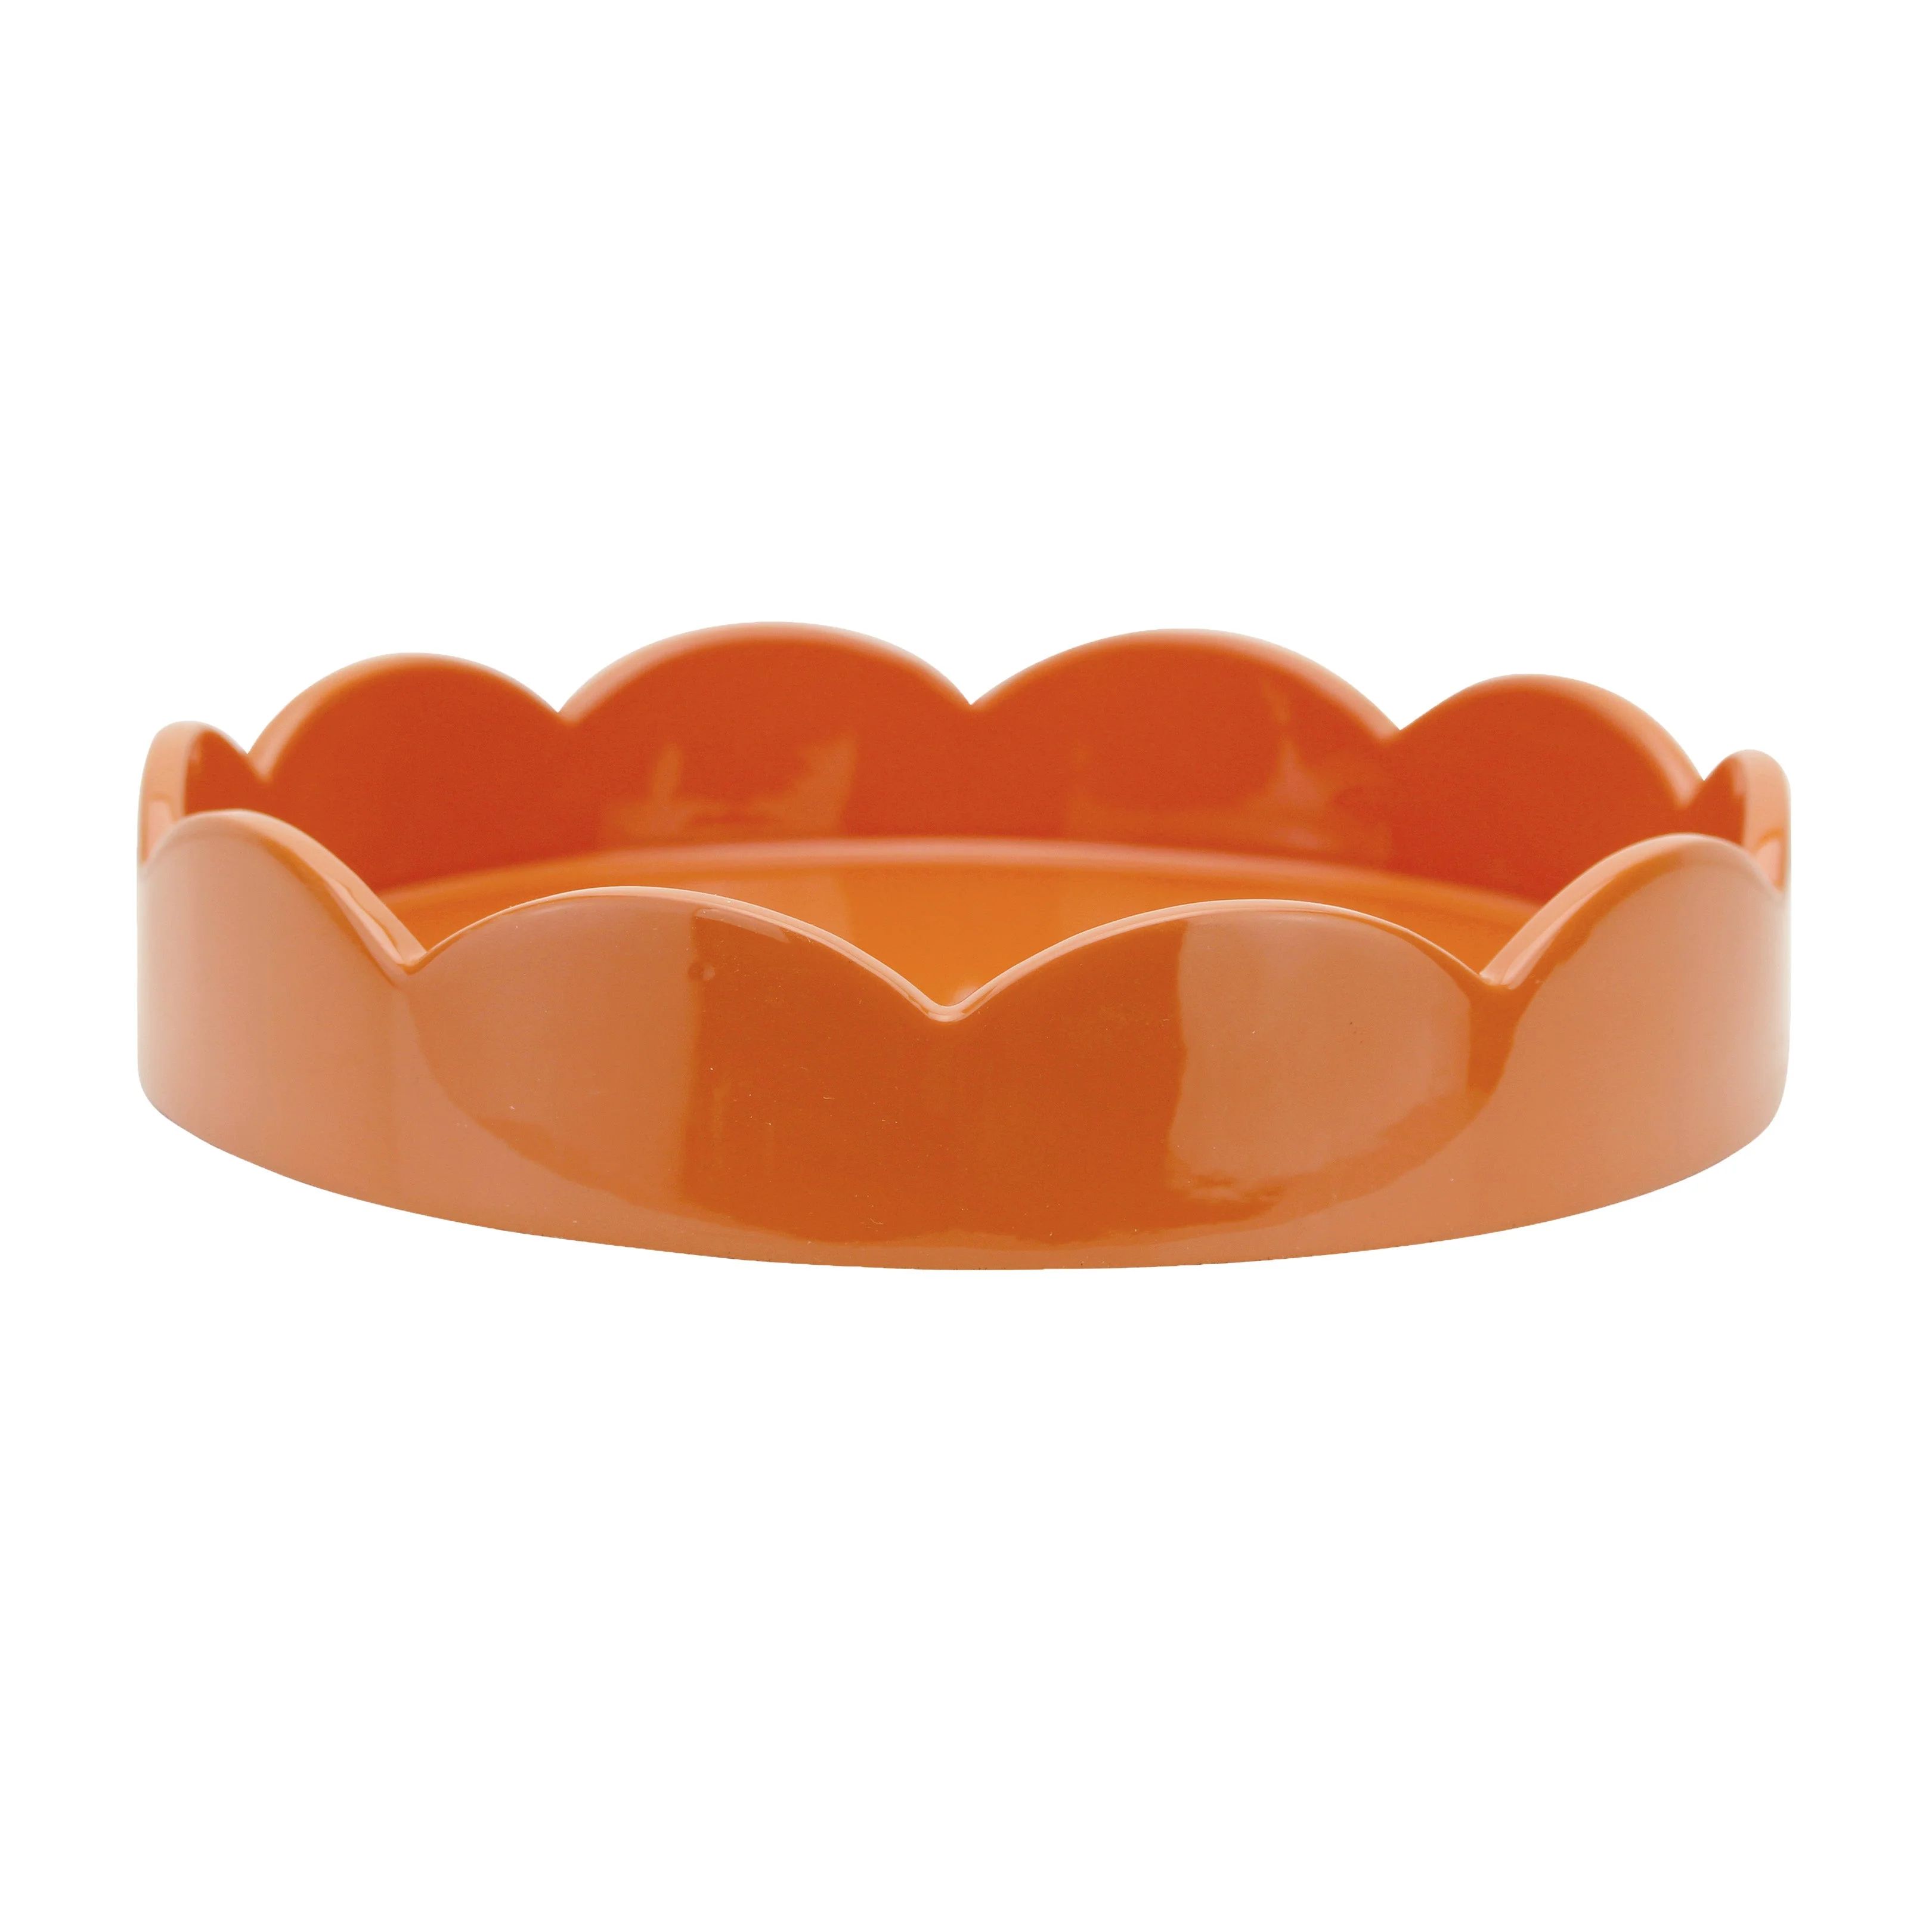 Orange Small Round Scallop Tray | Addison Ross